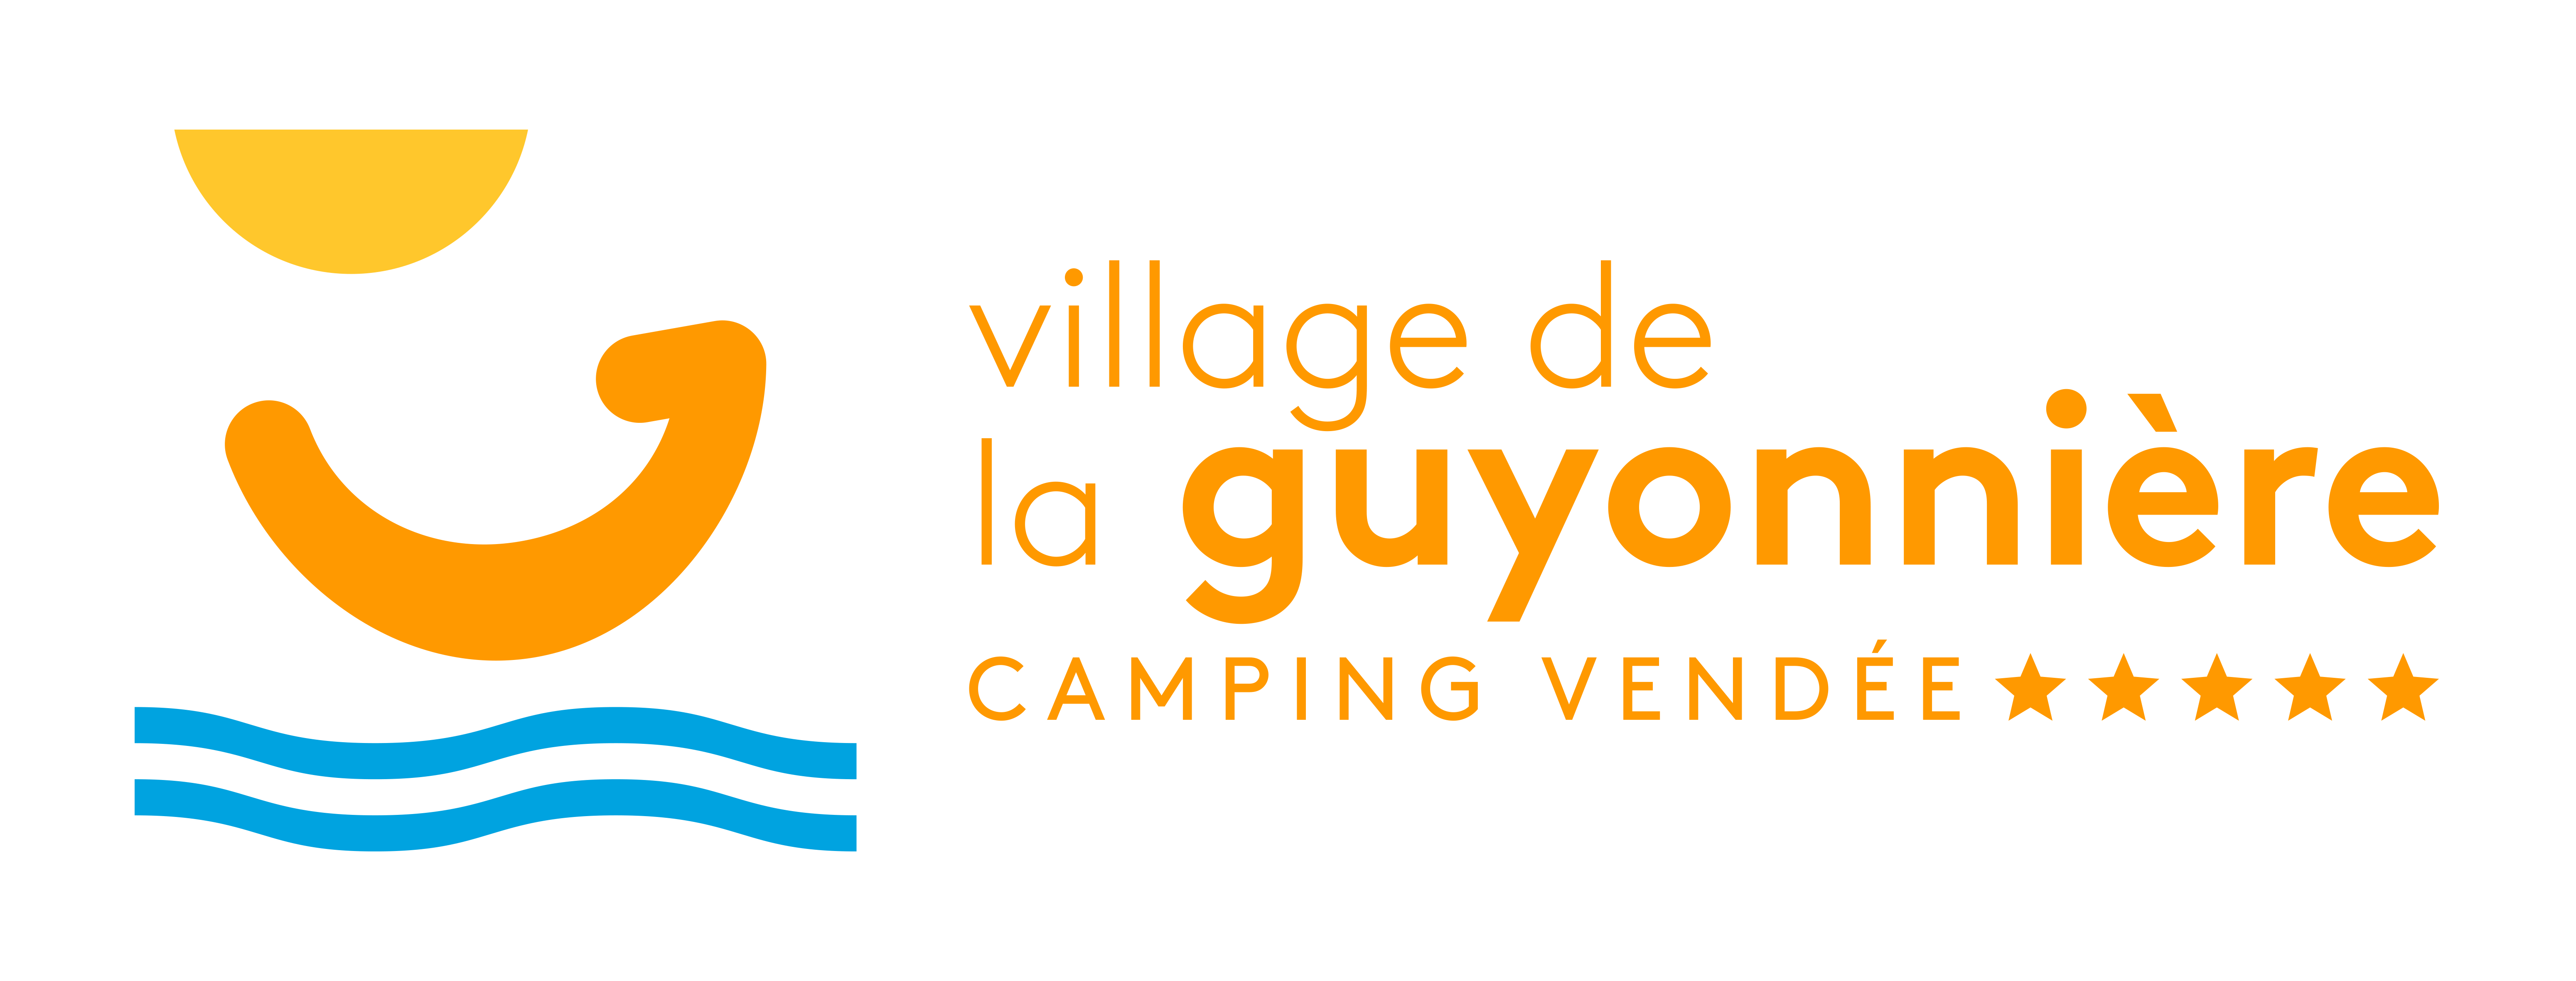 Village de la Guyonnière